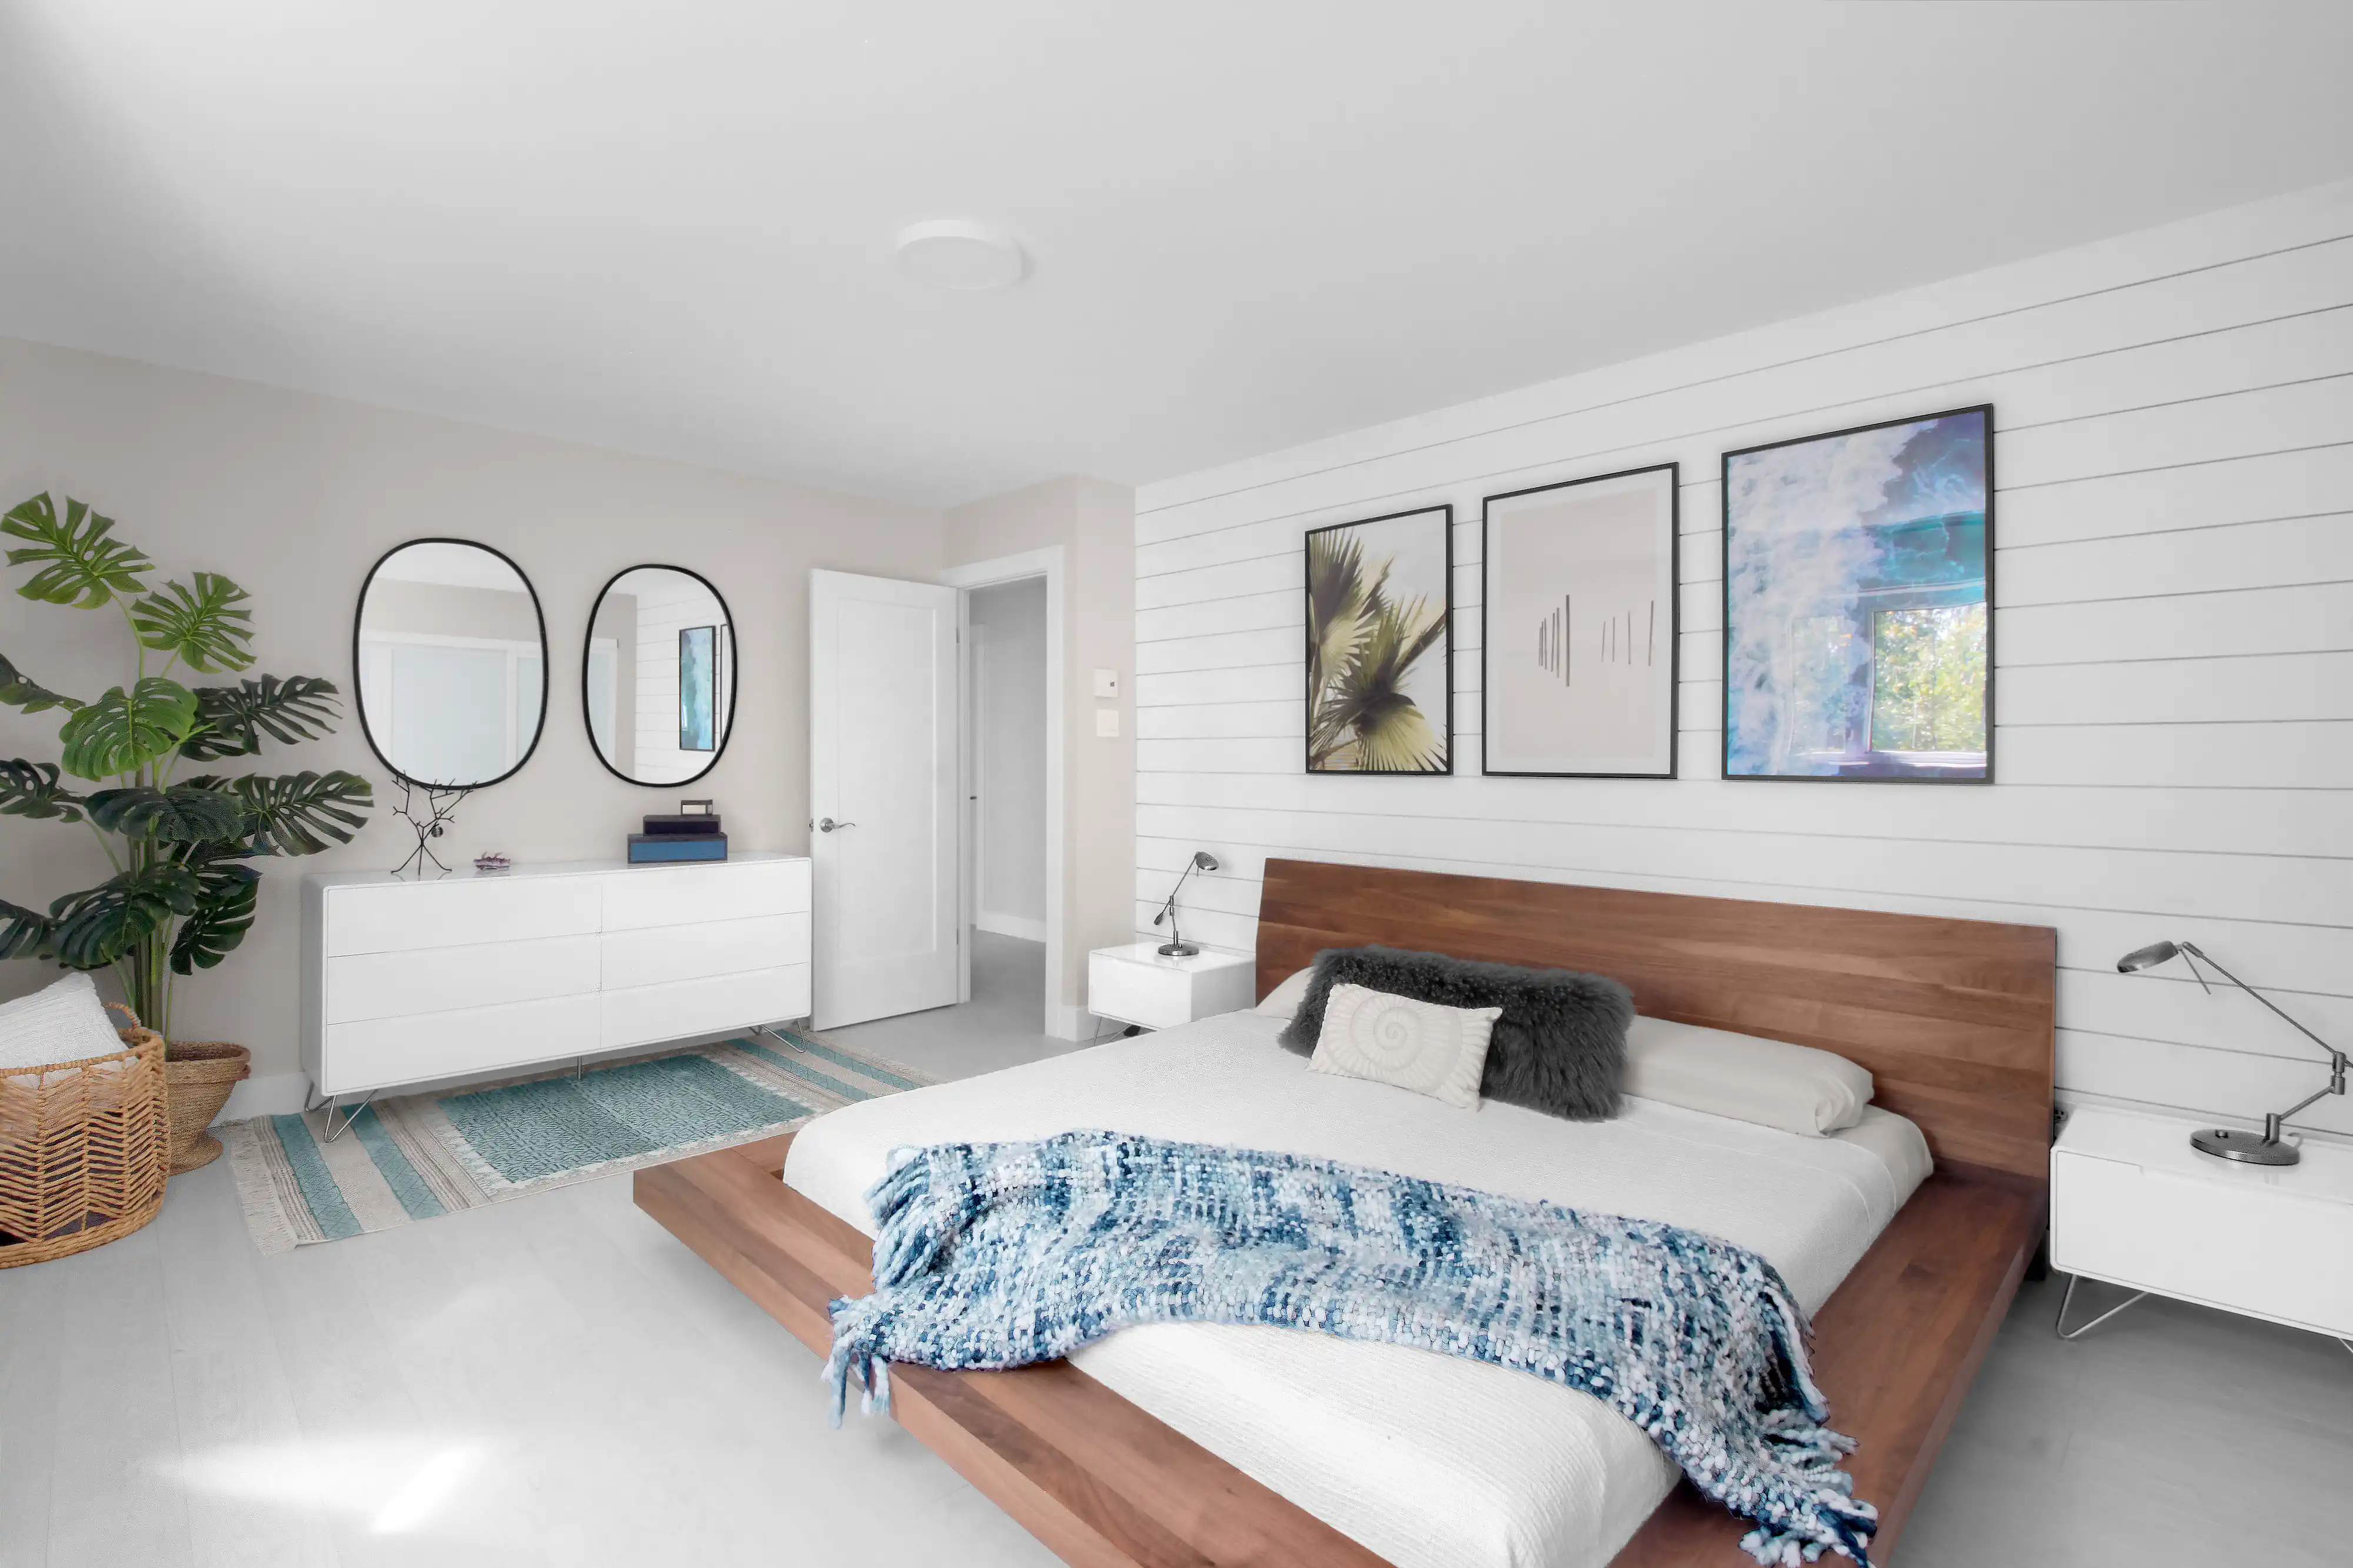 Chambre moderne avec un thème blanc et bois, comprenant un lit en plateforme en bois, une couverture jetée bleue, des tables de nuit blanches et des œuvres d'art encadrées, intérieur signé Sarah Brown Design